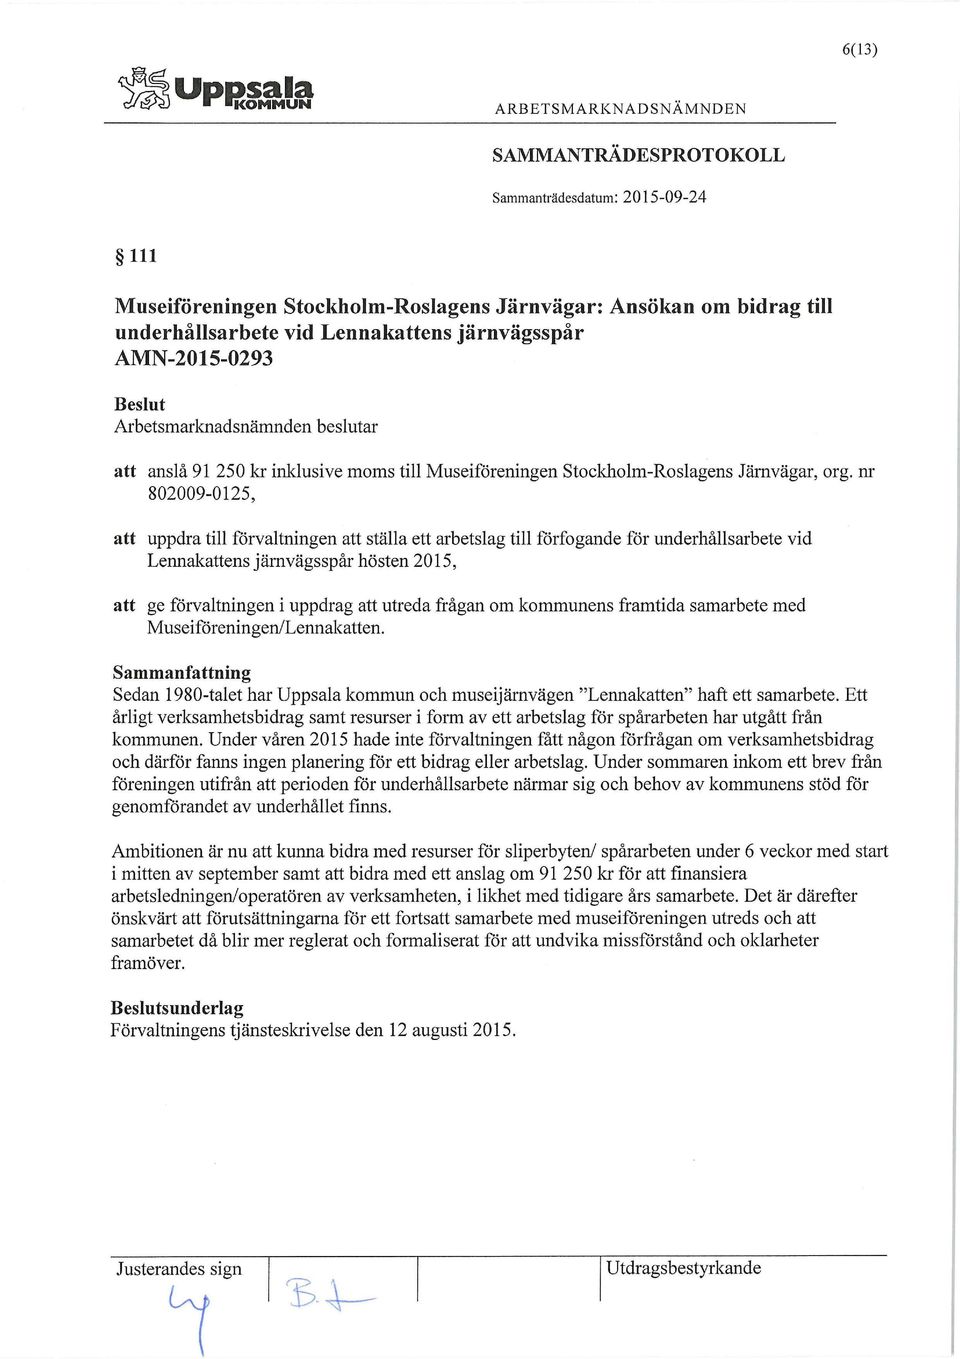 nr 802009-0125, att uppdra till förvaltningen att ställa ett arbetslag till förfogande för underhållsarbete vid Lennakattens järnvägsspår hösten 2015, att ge förvaltningen i uppdrag att utreda frågan